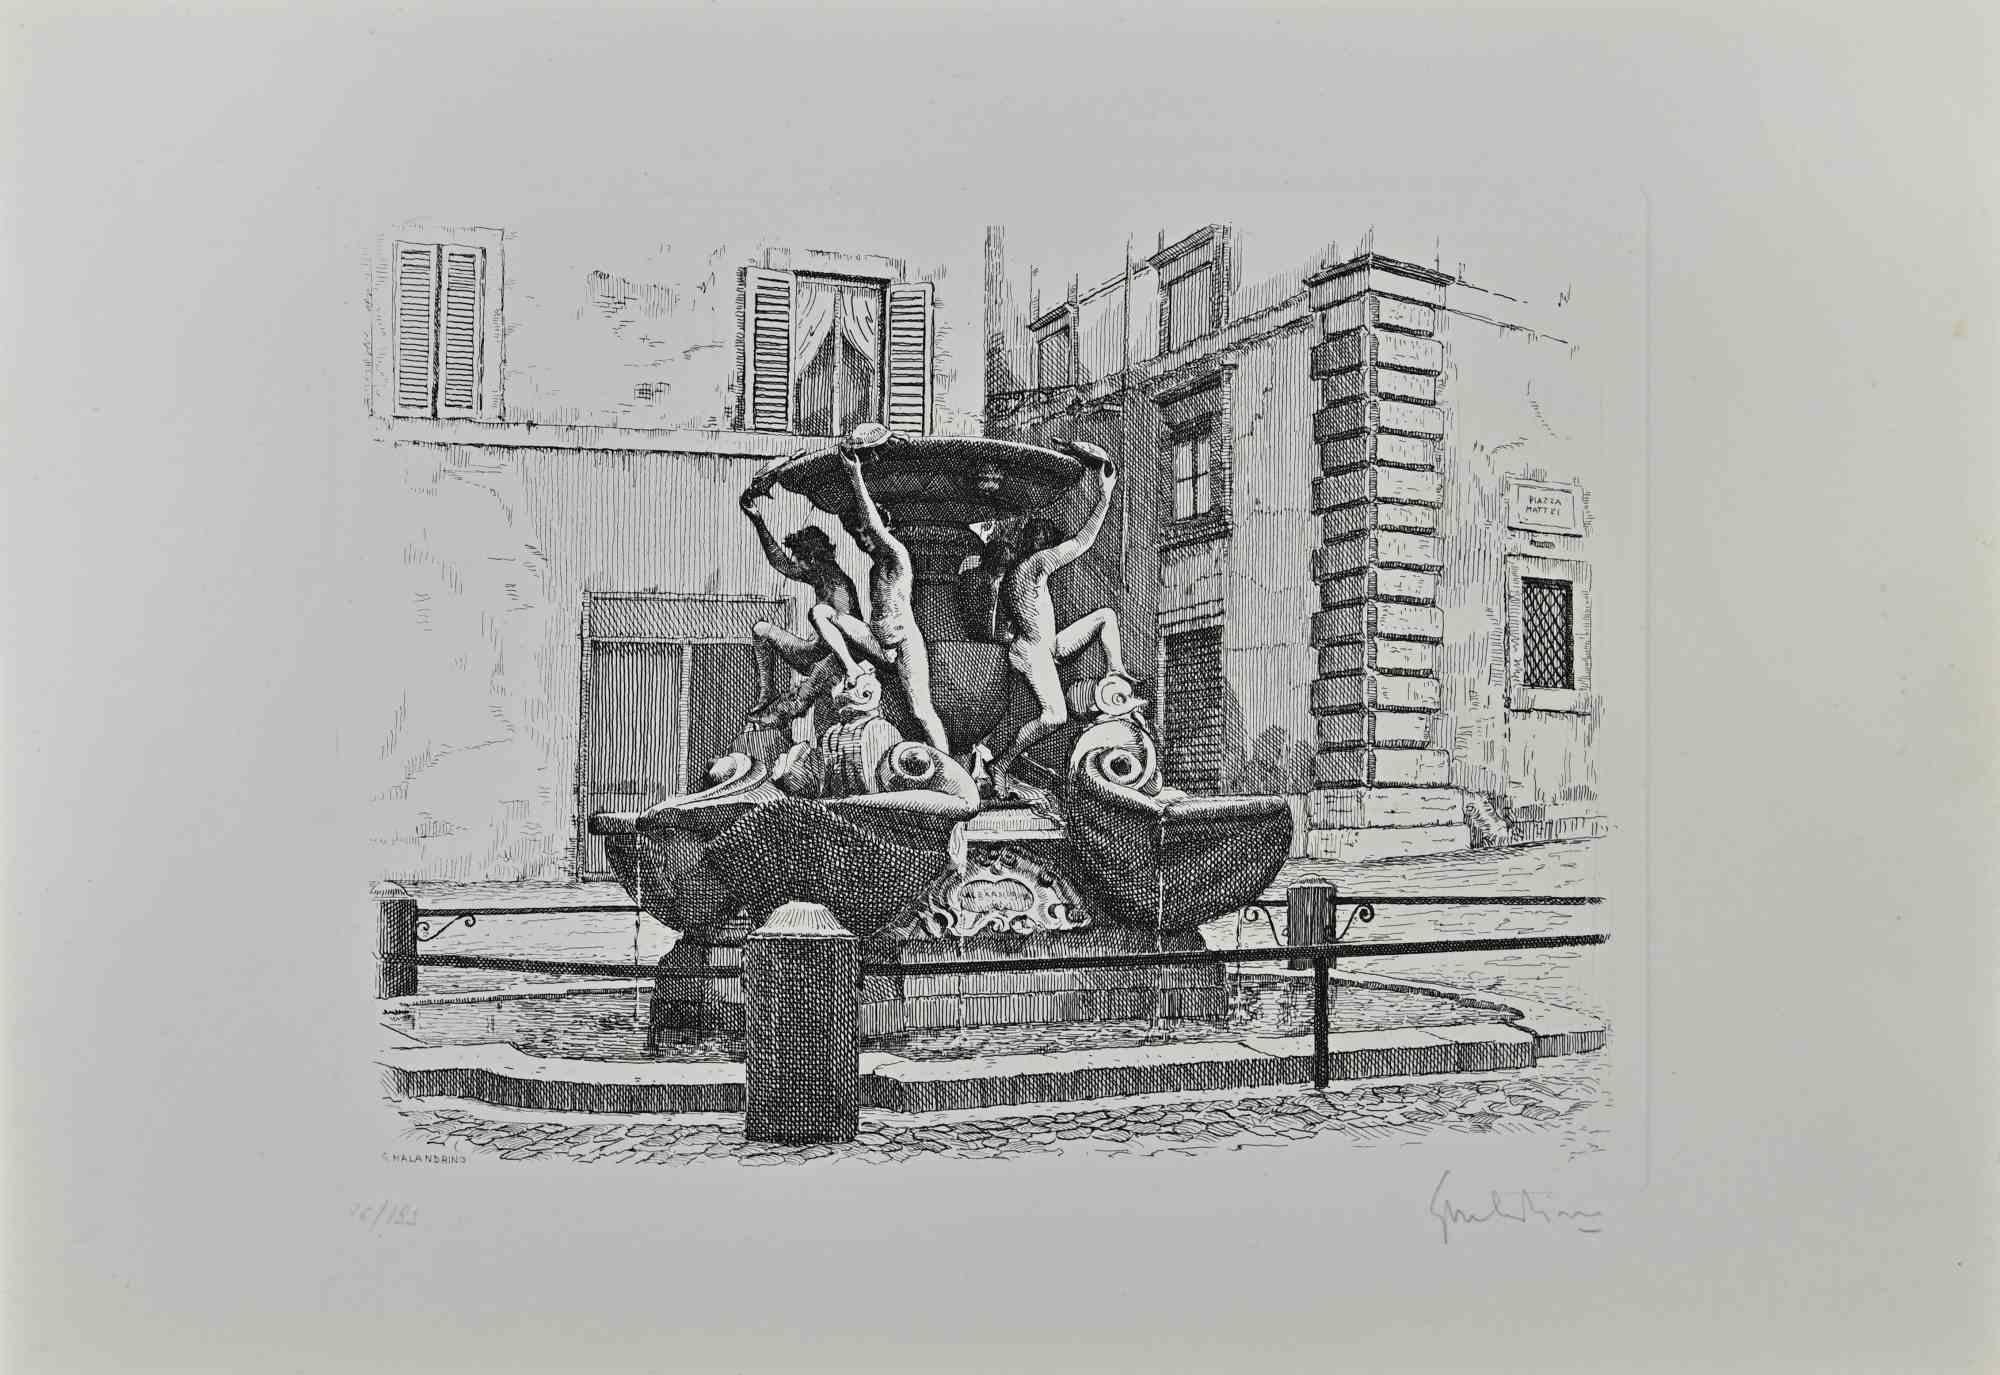 Der Schildkrötenbrunnen - Rom ist ein Originalkunstwerk von Giuseppe Malandrino.

Originaldruck in Ätztechnik.

Vom Künstler in der rechten unteren Ecke mit Bleistift handsigniert.

Nummerierte Auflage von 199 Exemplaren.

Gute Bedingungen. 

Dieses